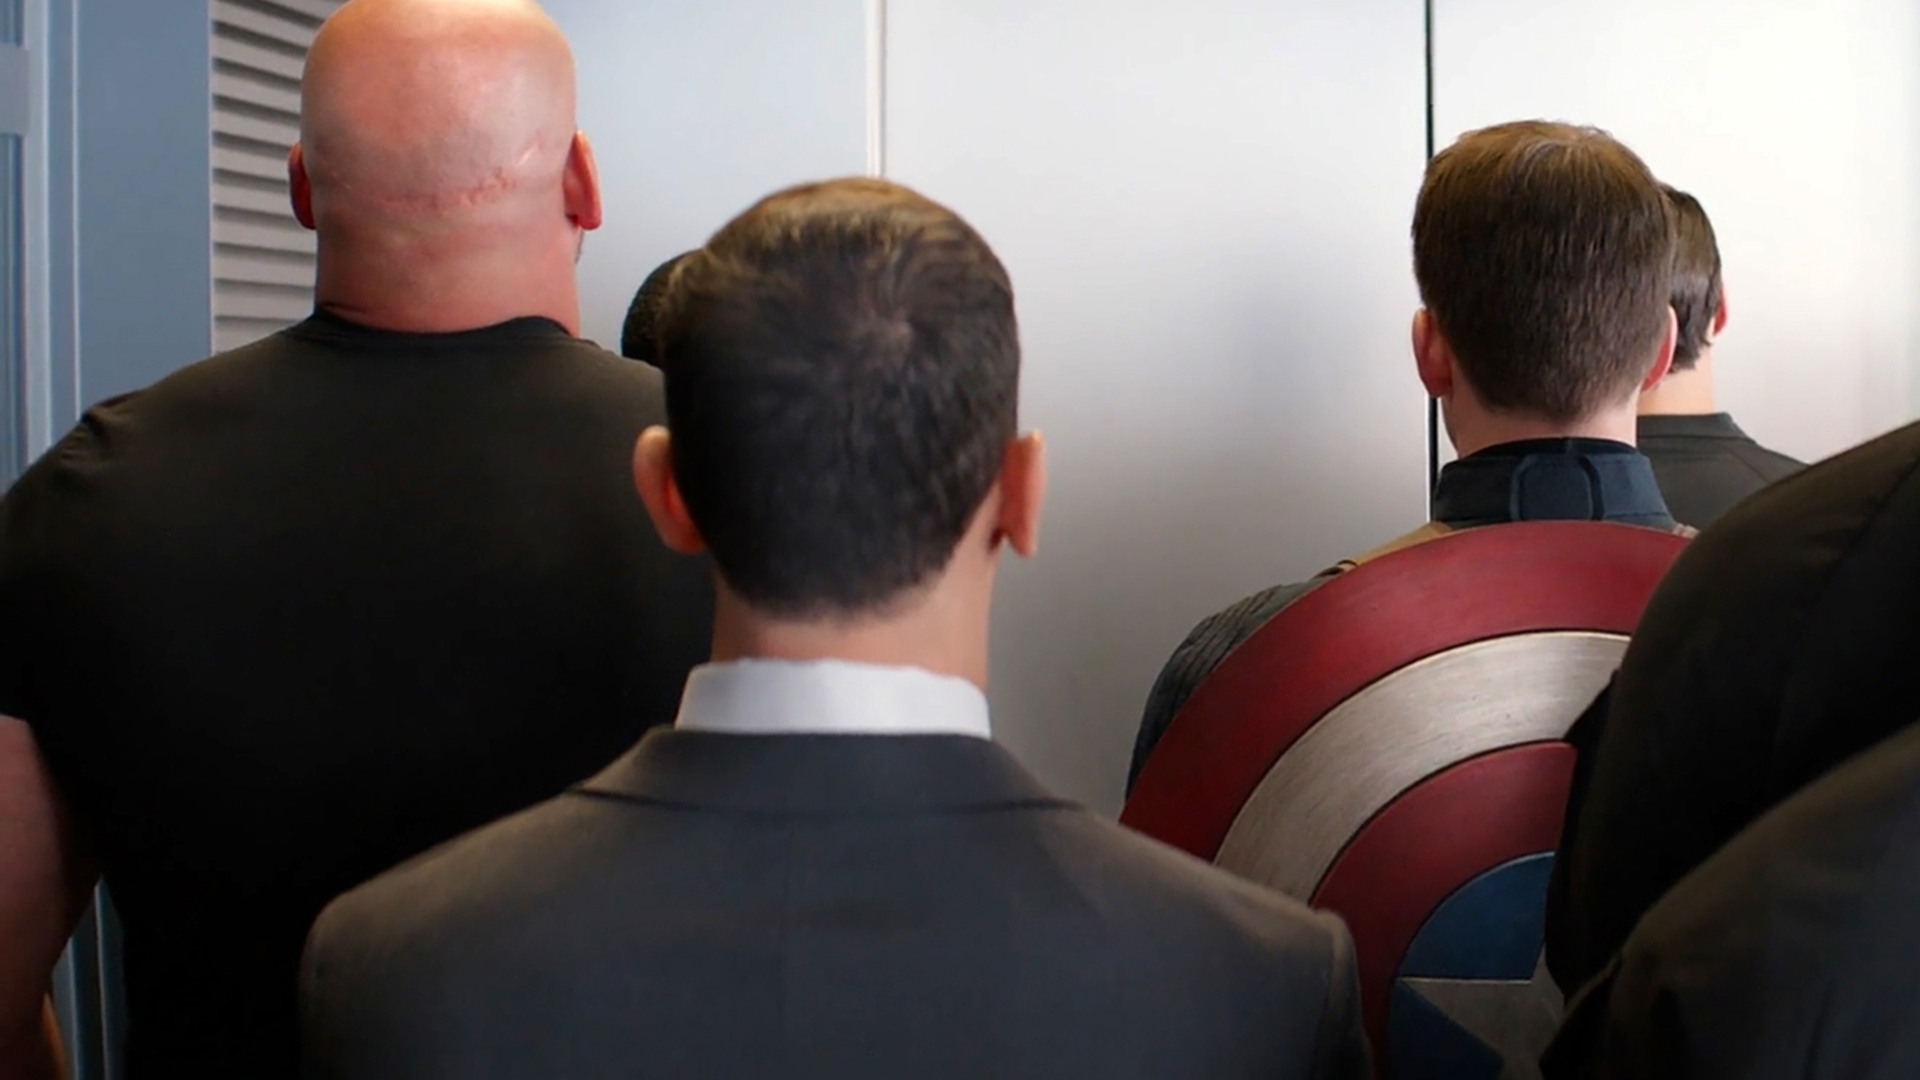 Capitán América escena del ascensor. Fondo virtual gratuito para Zoom, Microsoft Teams, Skype, Google Meet, WebEx o cualquier otra aplicación compatible.